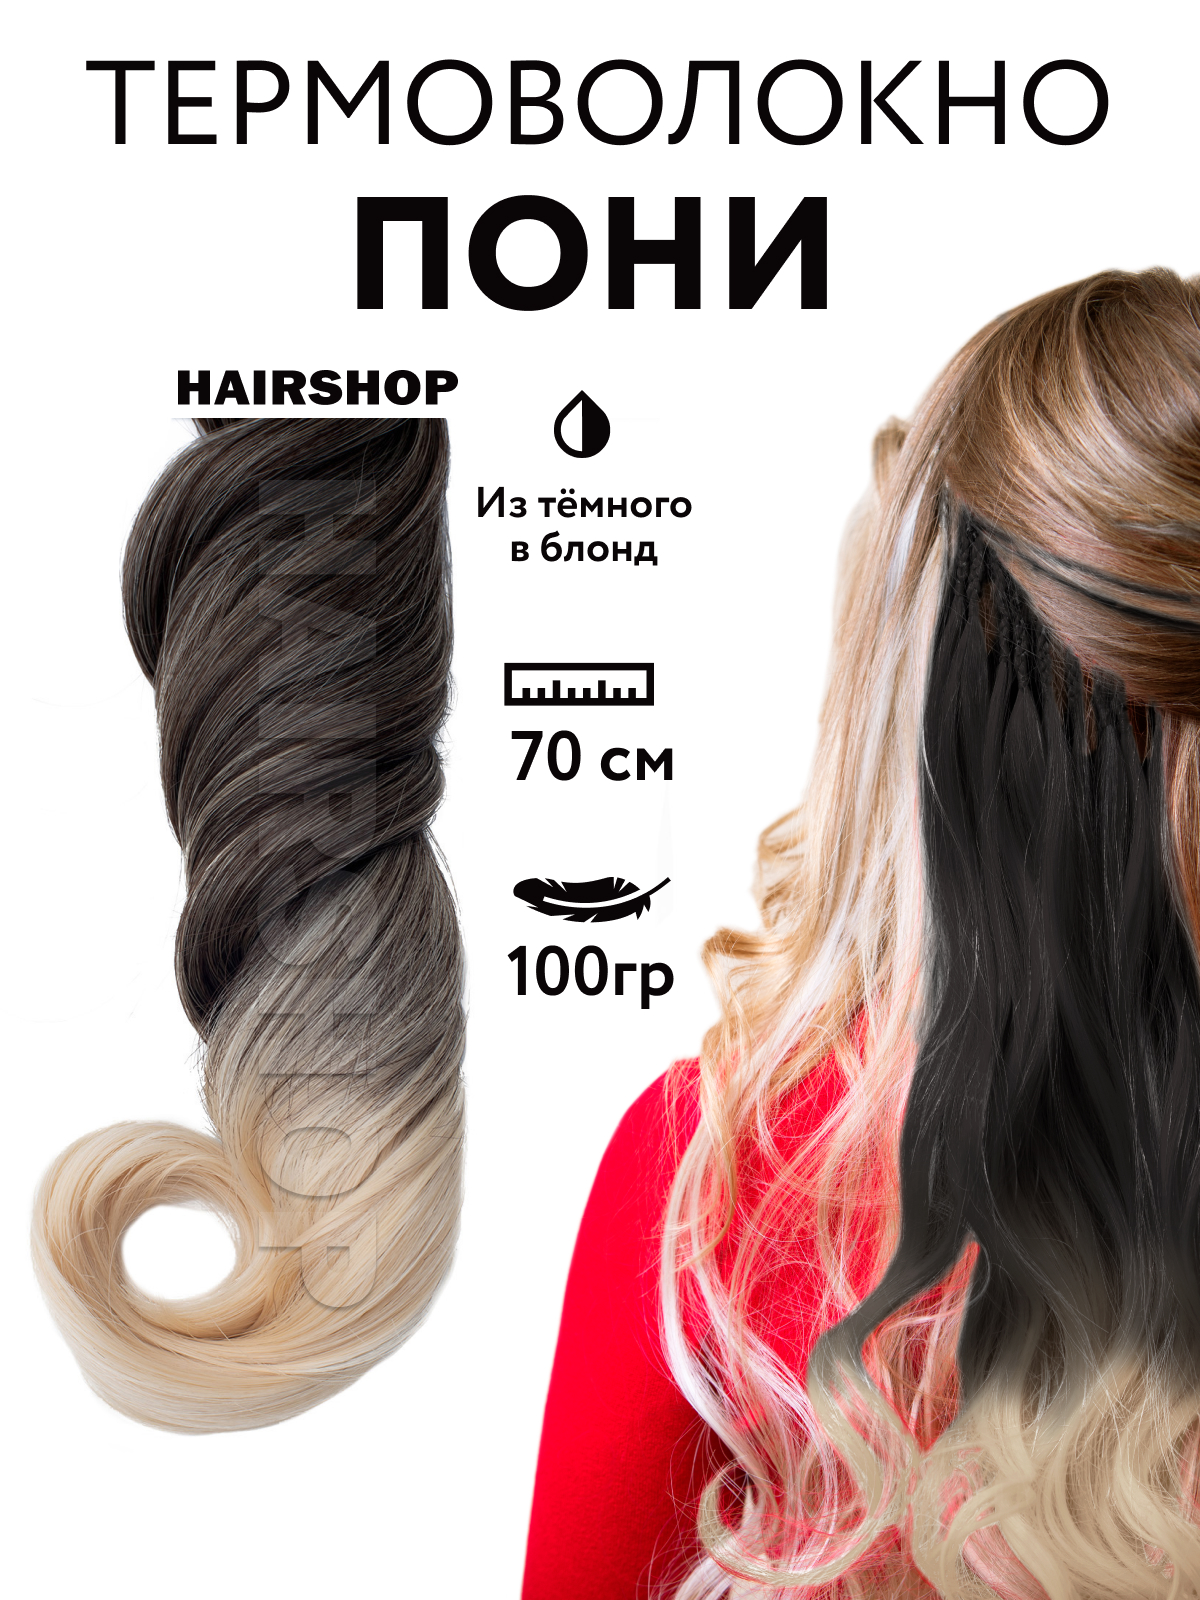 Канекалон HAIRSHOP Пони HairUp для точечного афронаращивания Из темного в блонд 1,4м канекалон hairshop пони hairup для точечного афронаращивания 118 1 бордо 1 4м